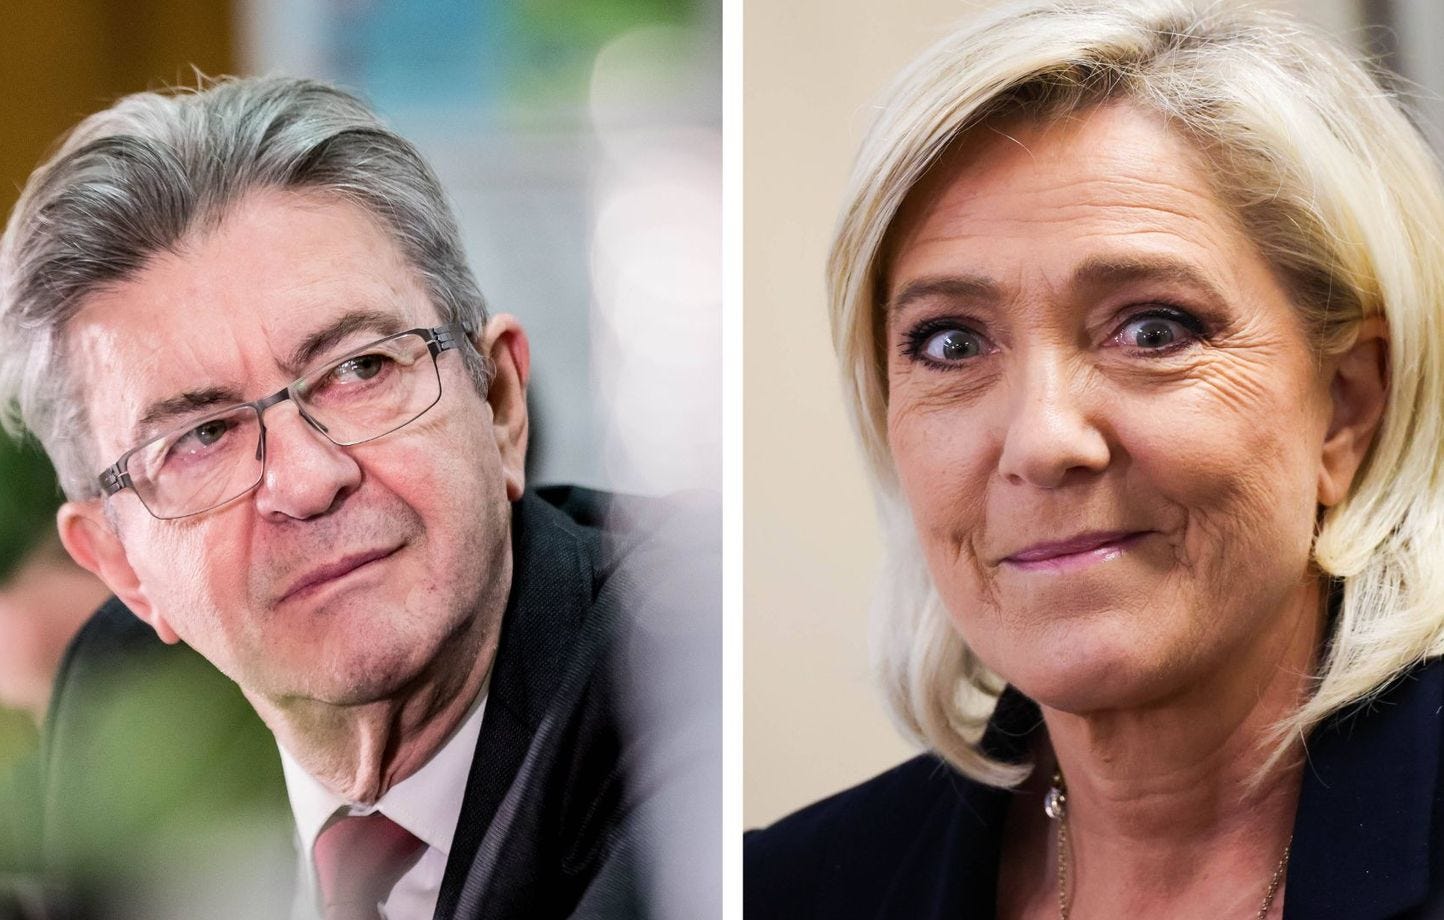 Le parti de Jean-Luc Mélenchon est souvent qualifié d'extrême gauche alors qu'il n'est pas reconnu comme tel par le Conseil d'Etat tandis que le parti de Marine Le Pen a été classé dans le bloc « extrême droite » par cette même institution